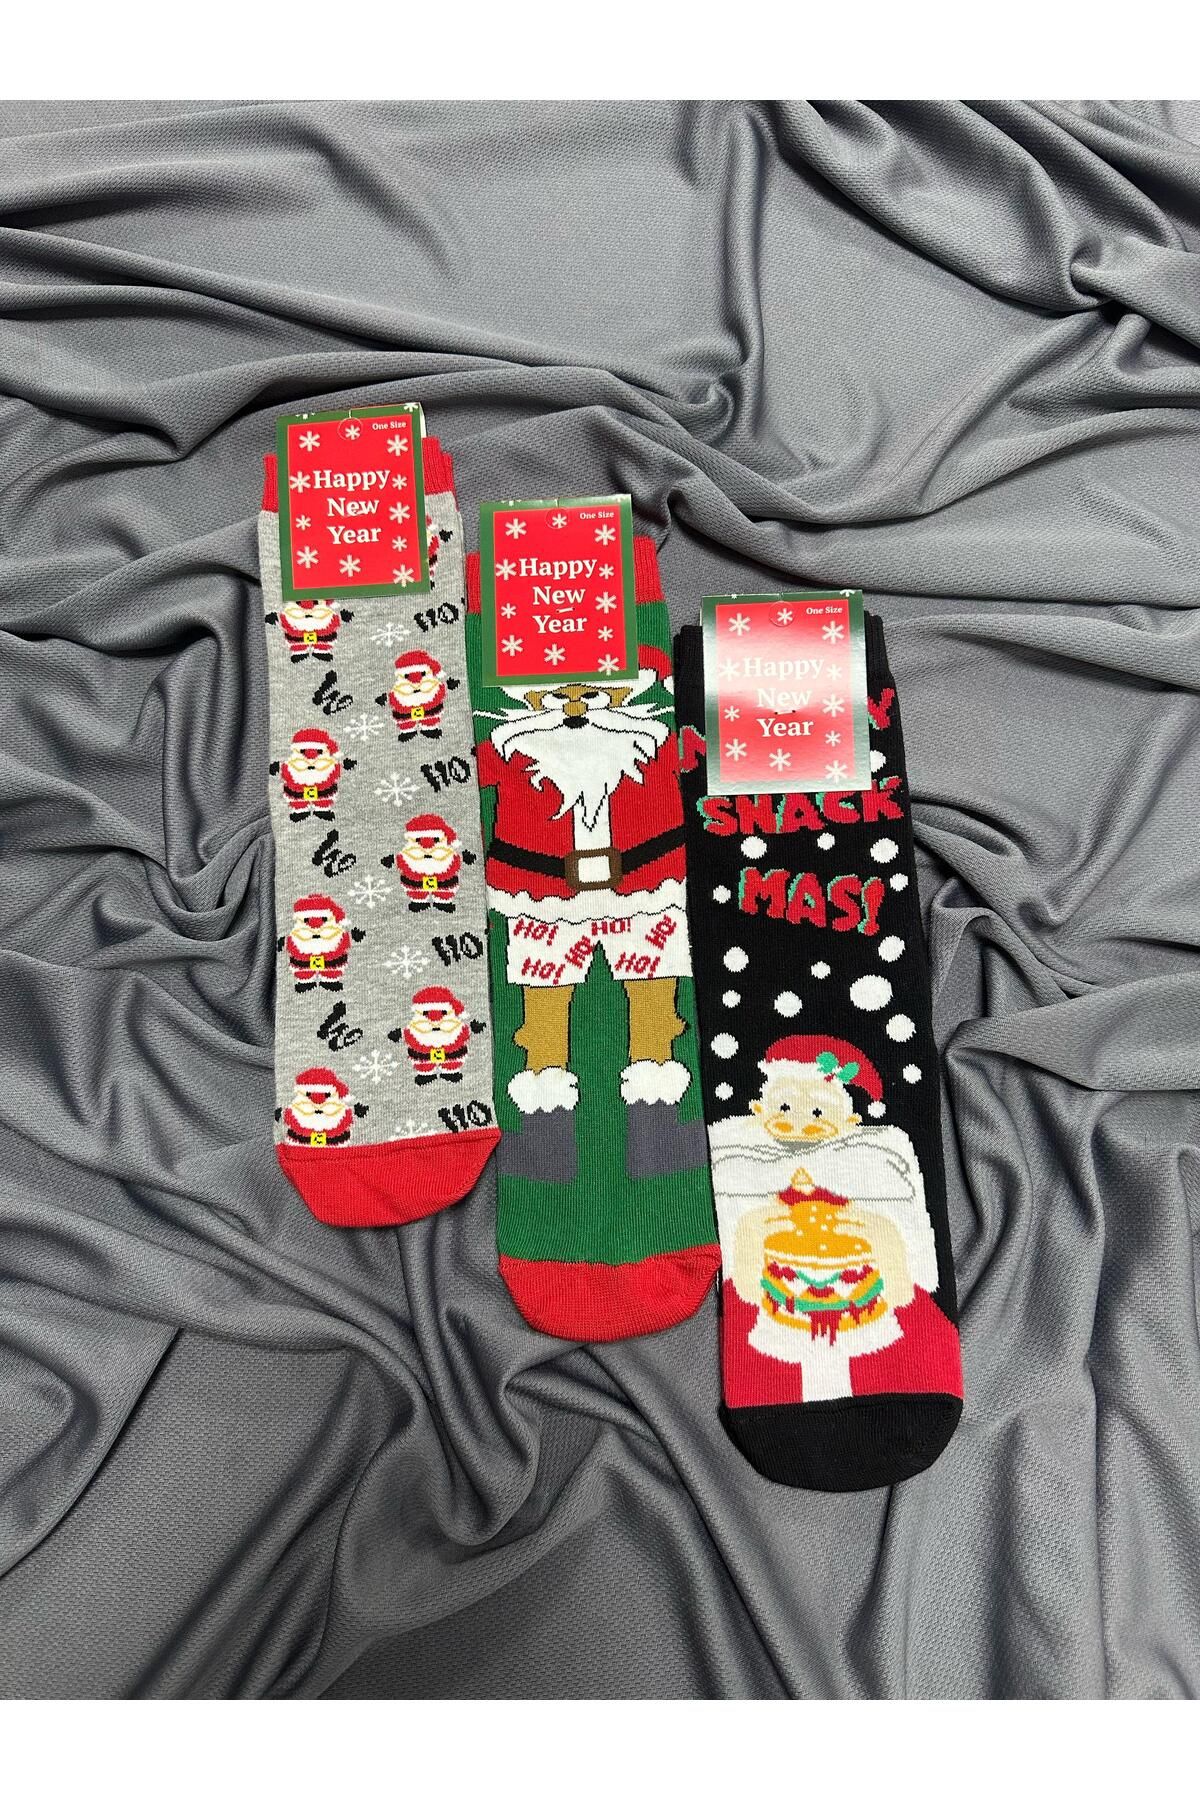 KRC & GLOBAL TEKSTİL Yılbaşı - Noel - Christmas Temalı Unisex Çorapları 3'lü